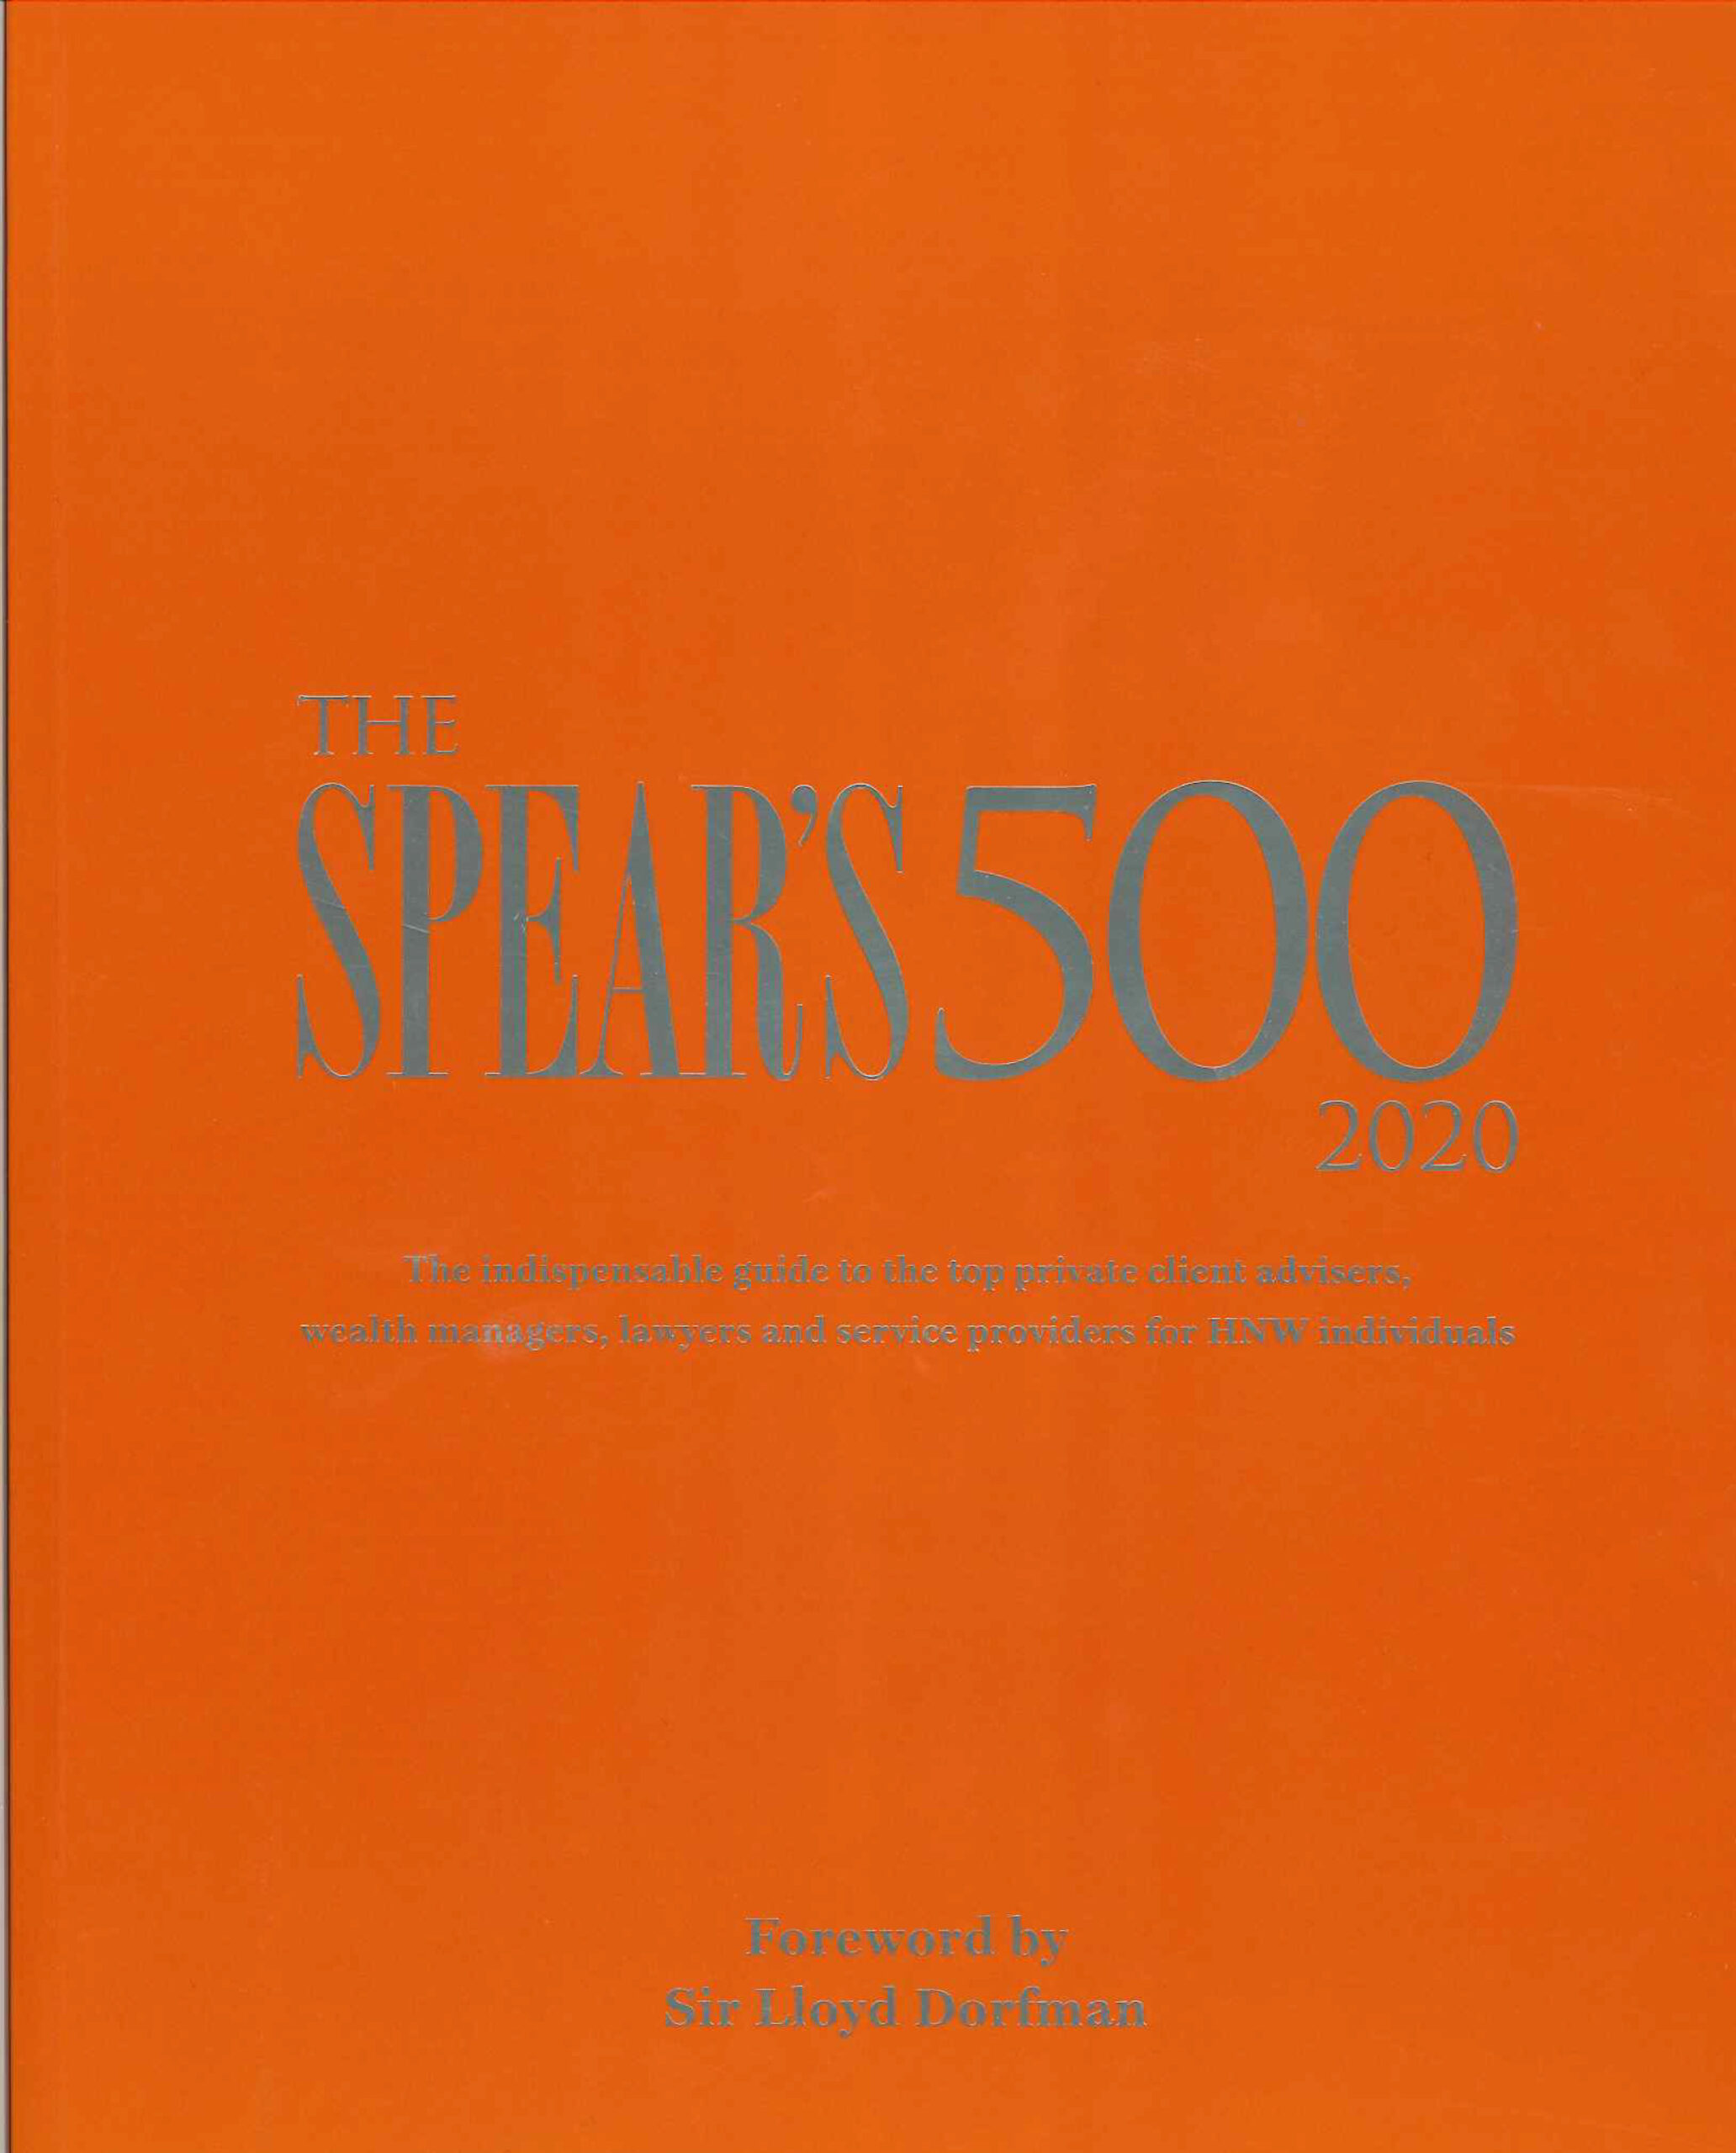 The Spears 500 2020 » Tara Bernerd